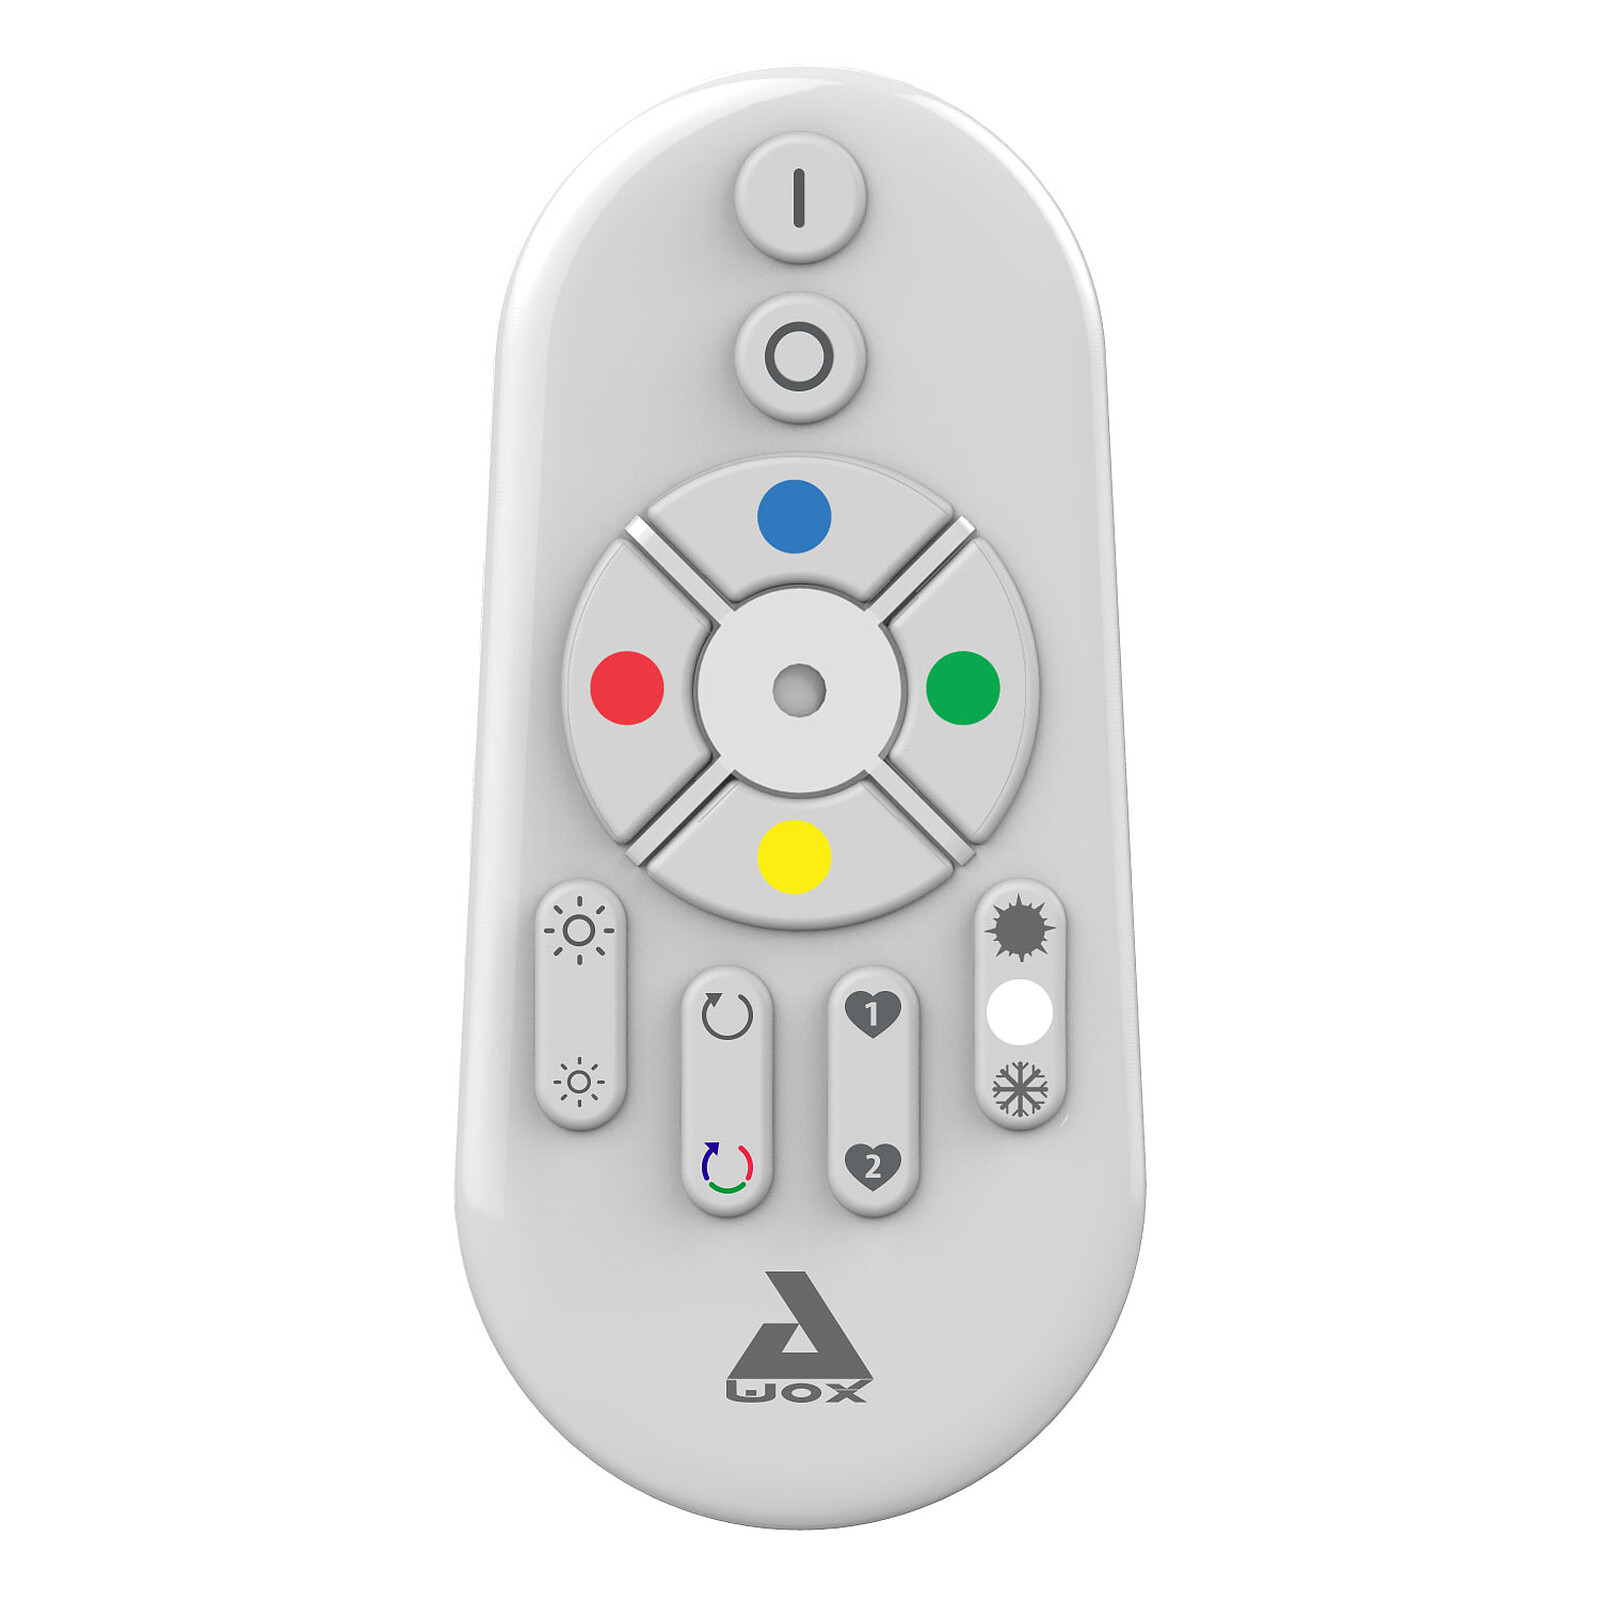 AwoX SmartKit Remote 2 Color Mesh - Ampoule connectée - Garantie 3 ans LDLC